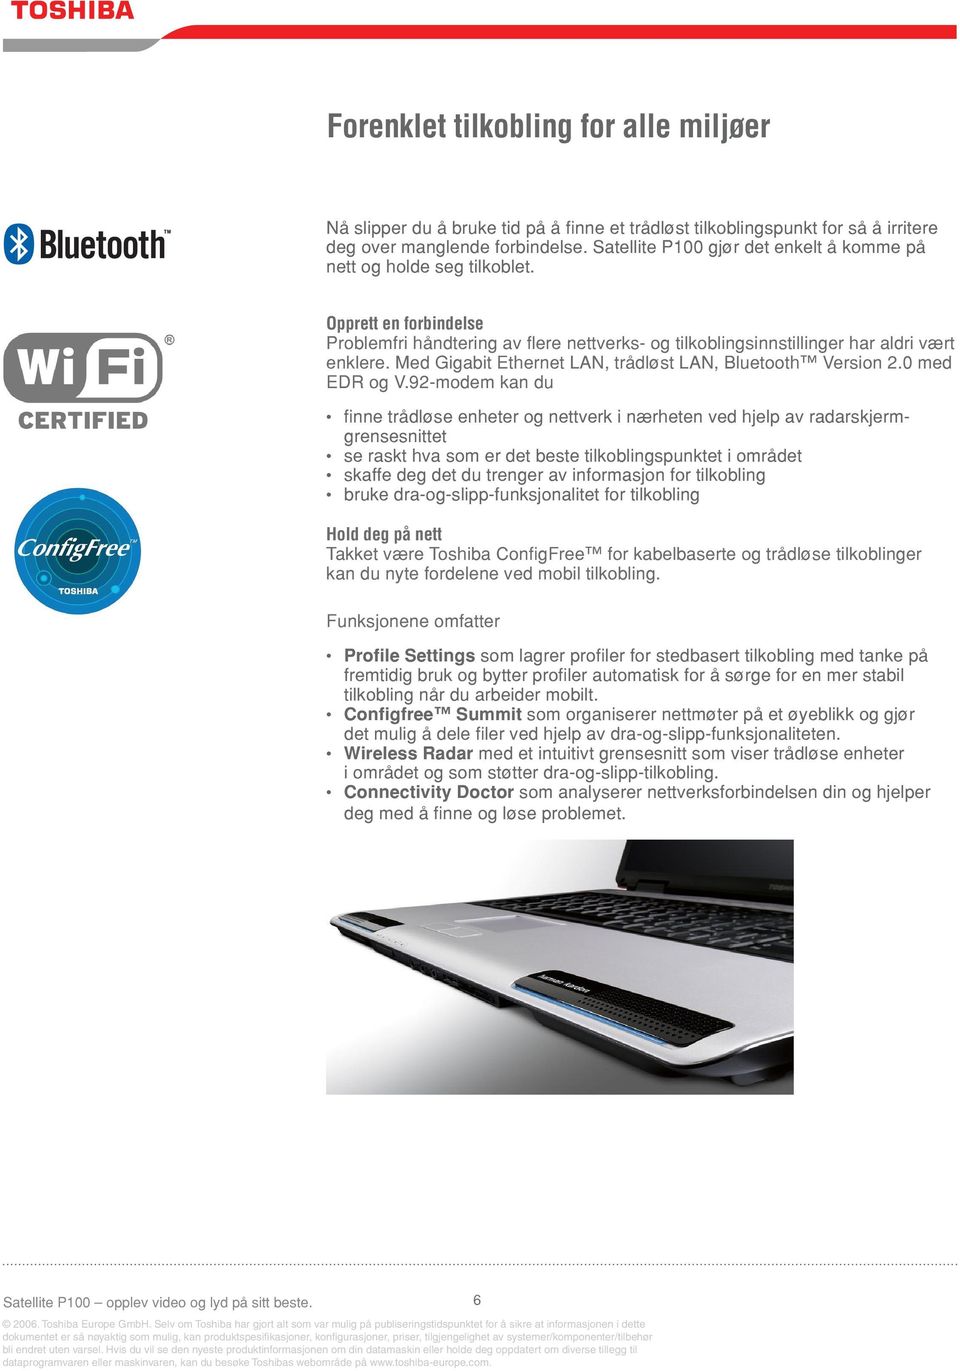 Med Gigabit Ethernet LAN, trådløst LAN, Bluetooth Version 2.0 med EDR og V.